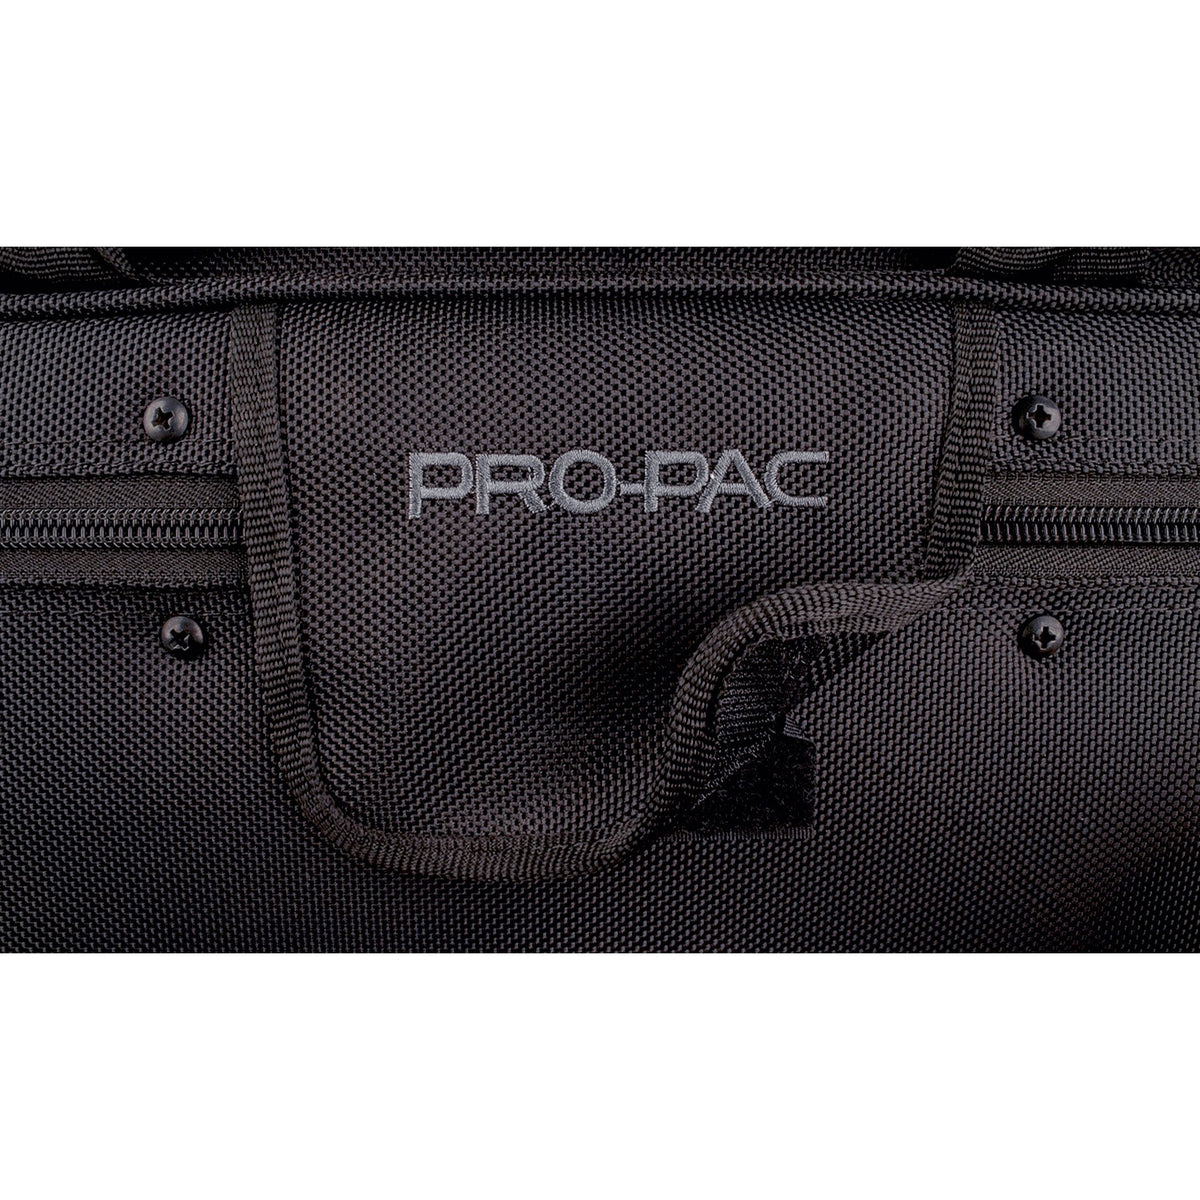 Protec - Trumpet PRO PAC Case (Contoured)-Case-Protec-Music Elements